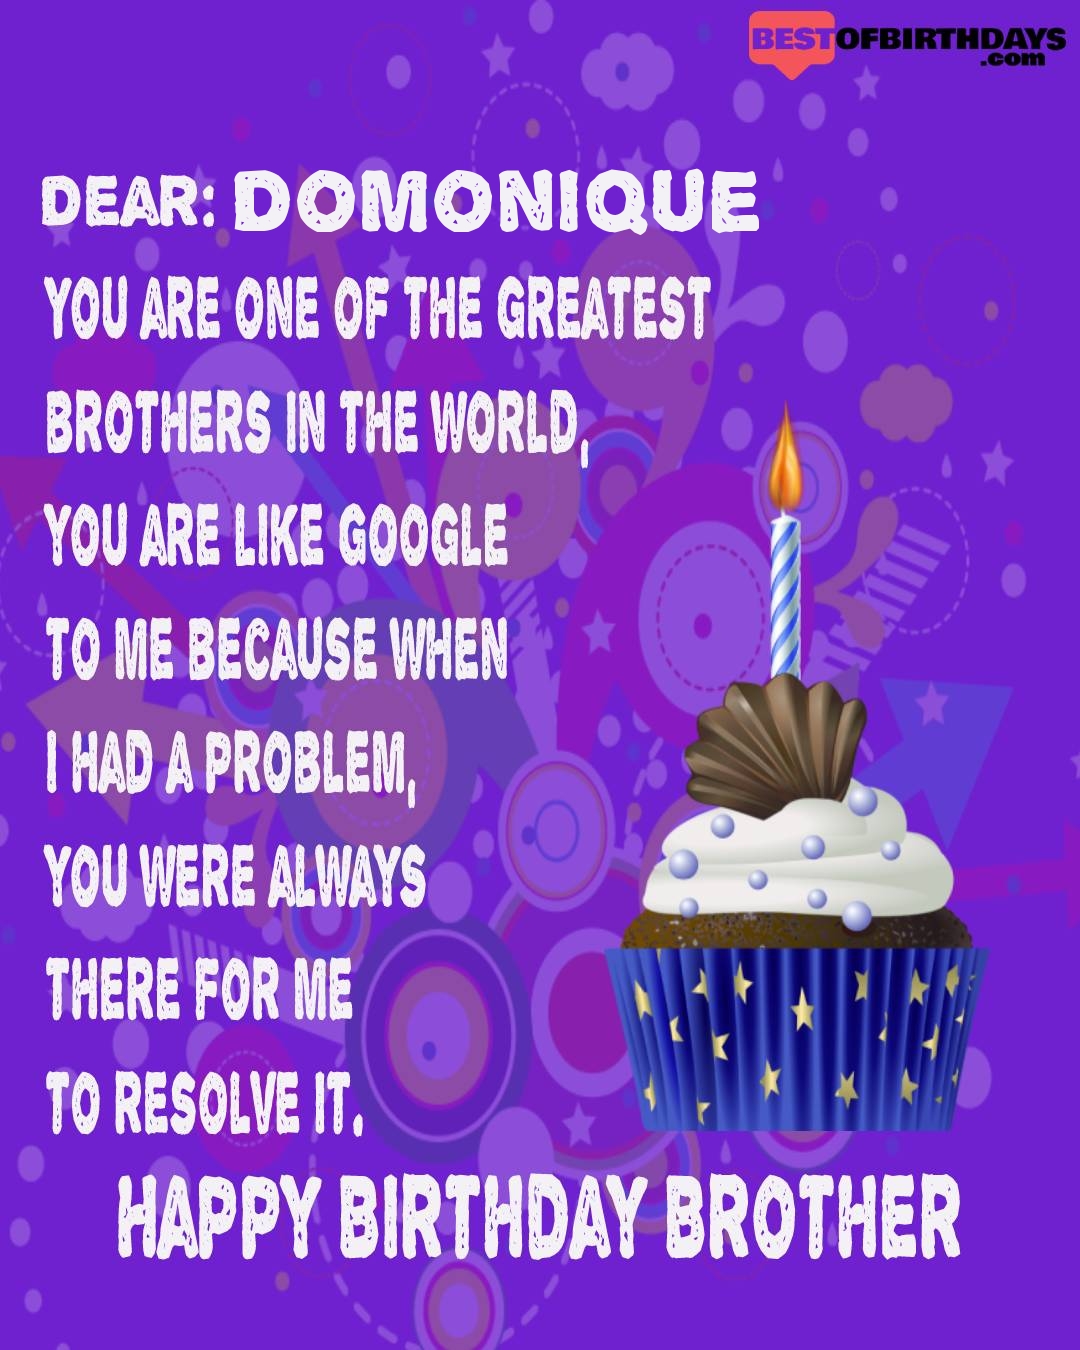 Happy birthday domonique bhai brother bro